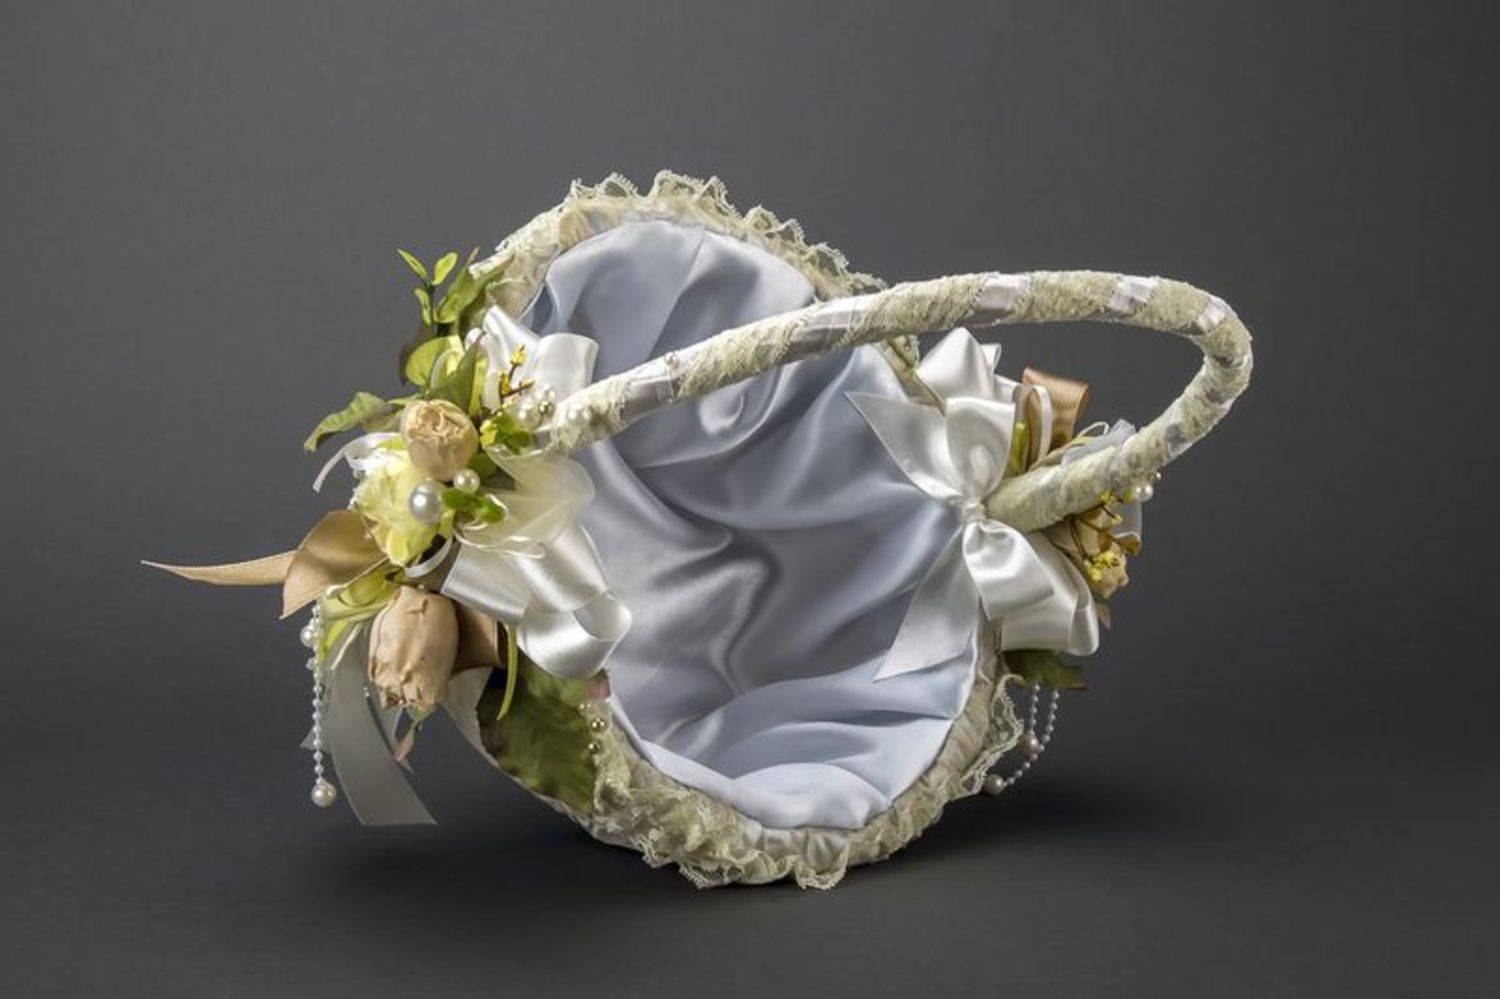 Свадебная корзина — изящный аксессуар церемонии